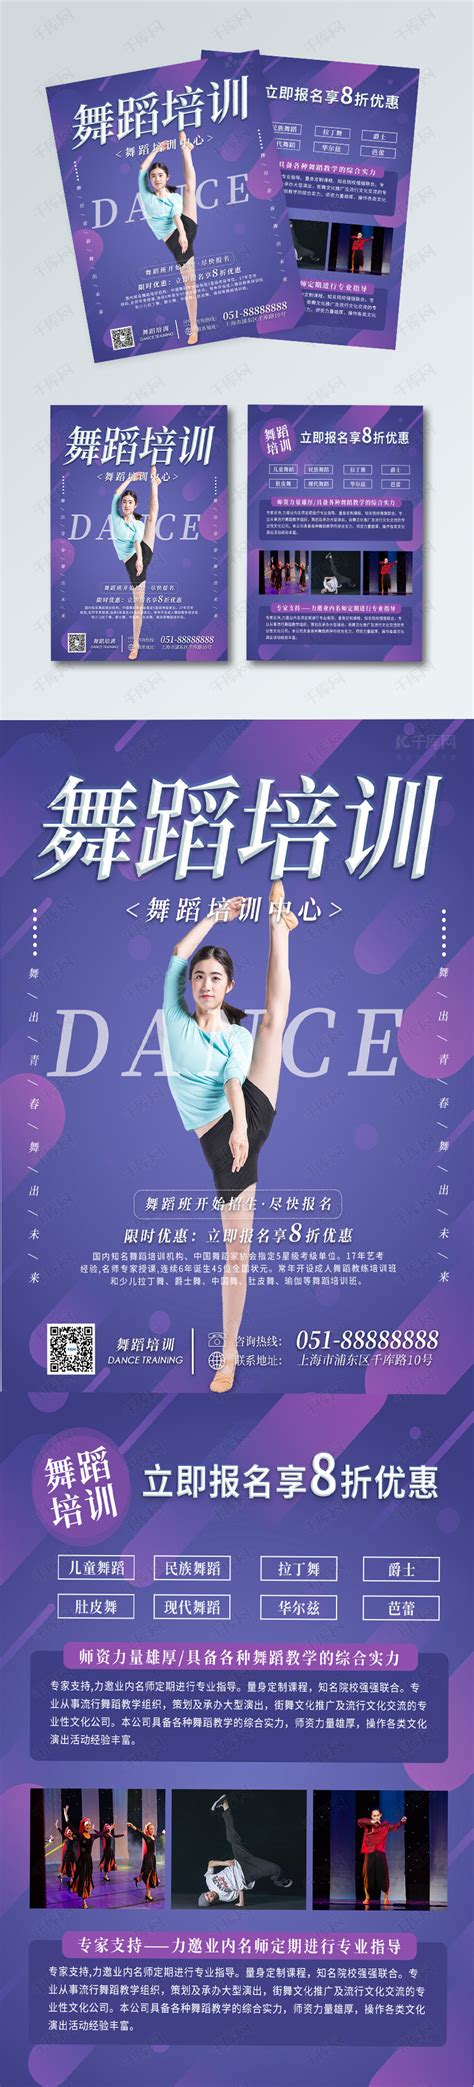 舞蹈培训课程推广海报设计模板 Dance Class Flyer Set – 设计小咖